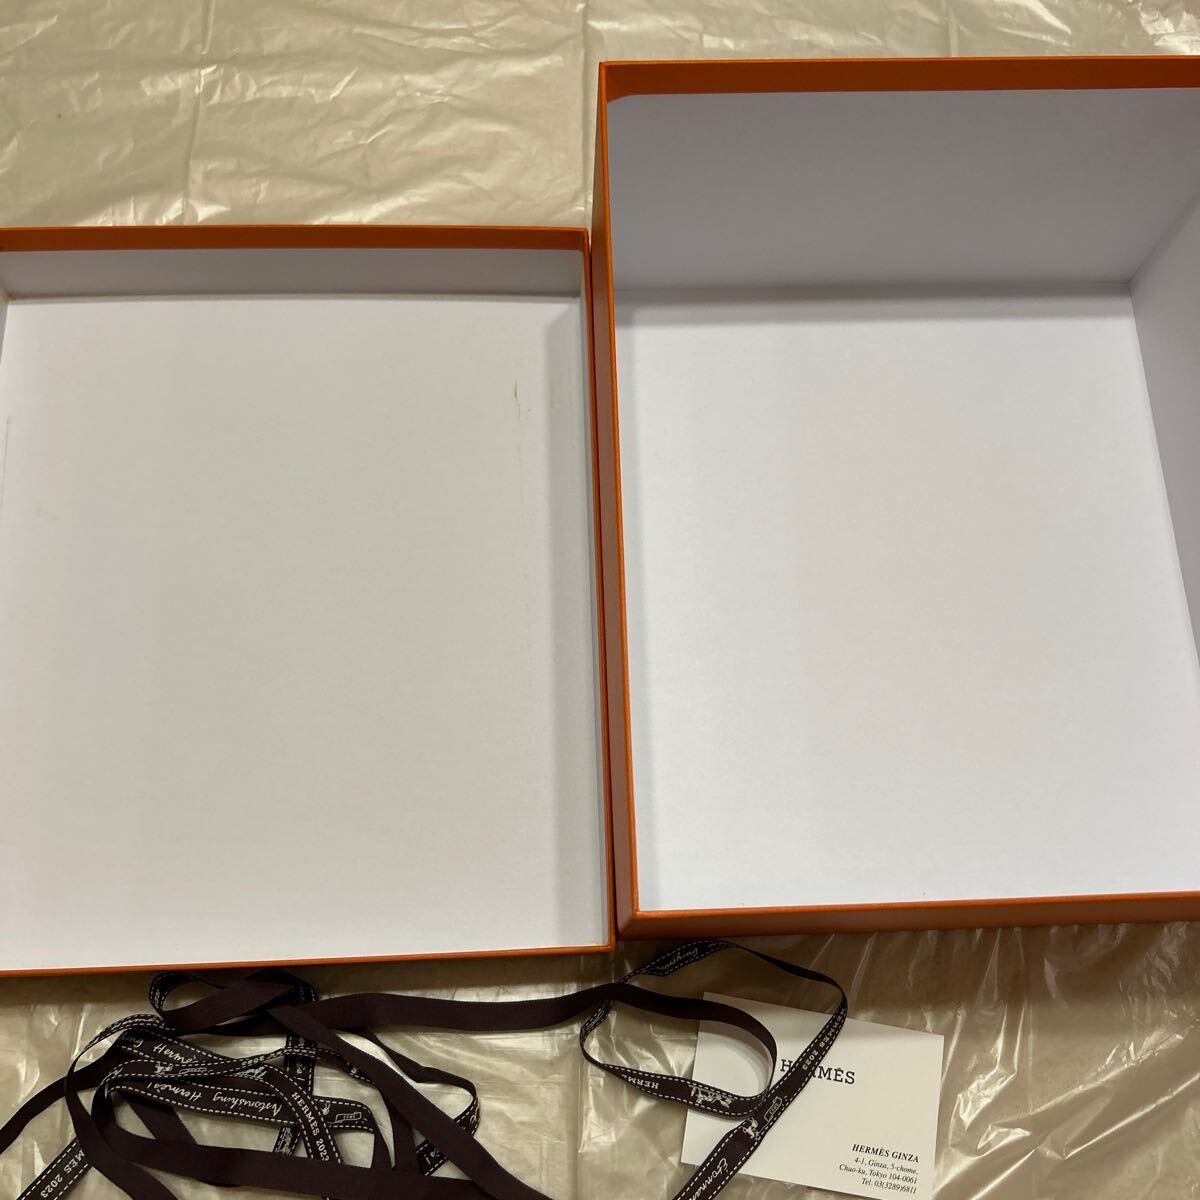 2023 エルメス バーキン25 空箱 32×28×16 空き箱 化粧箱 BOX バッグ 現行品 リボン バーキン ショップカードの画像3